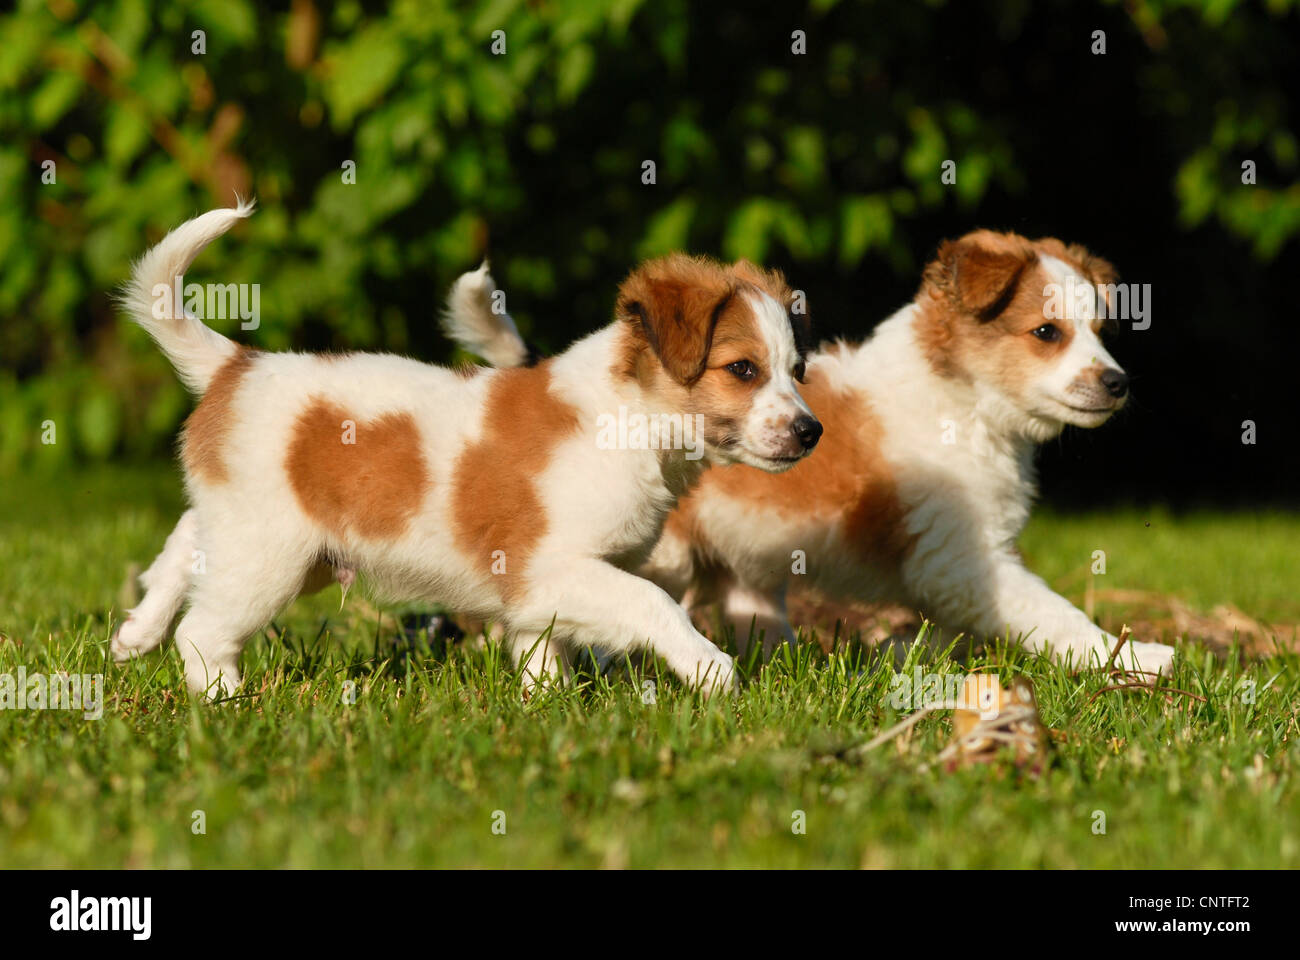 Kromfohrlaender (Canis lupus f. familiaris), due cuccioli in esecuzione attraverso un prato Foto Stock